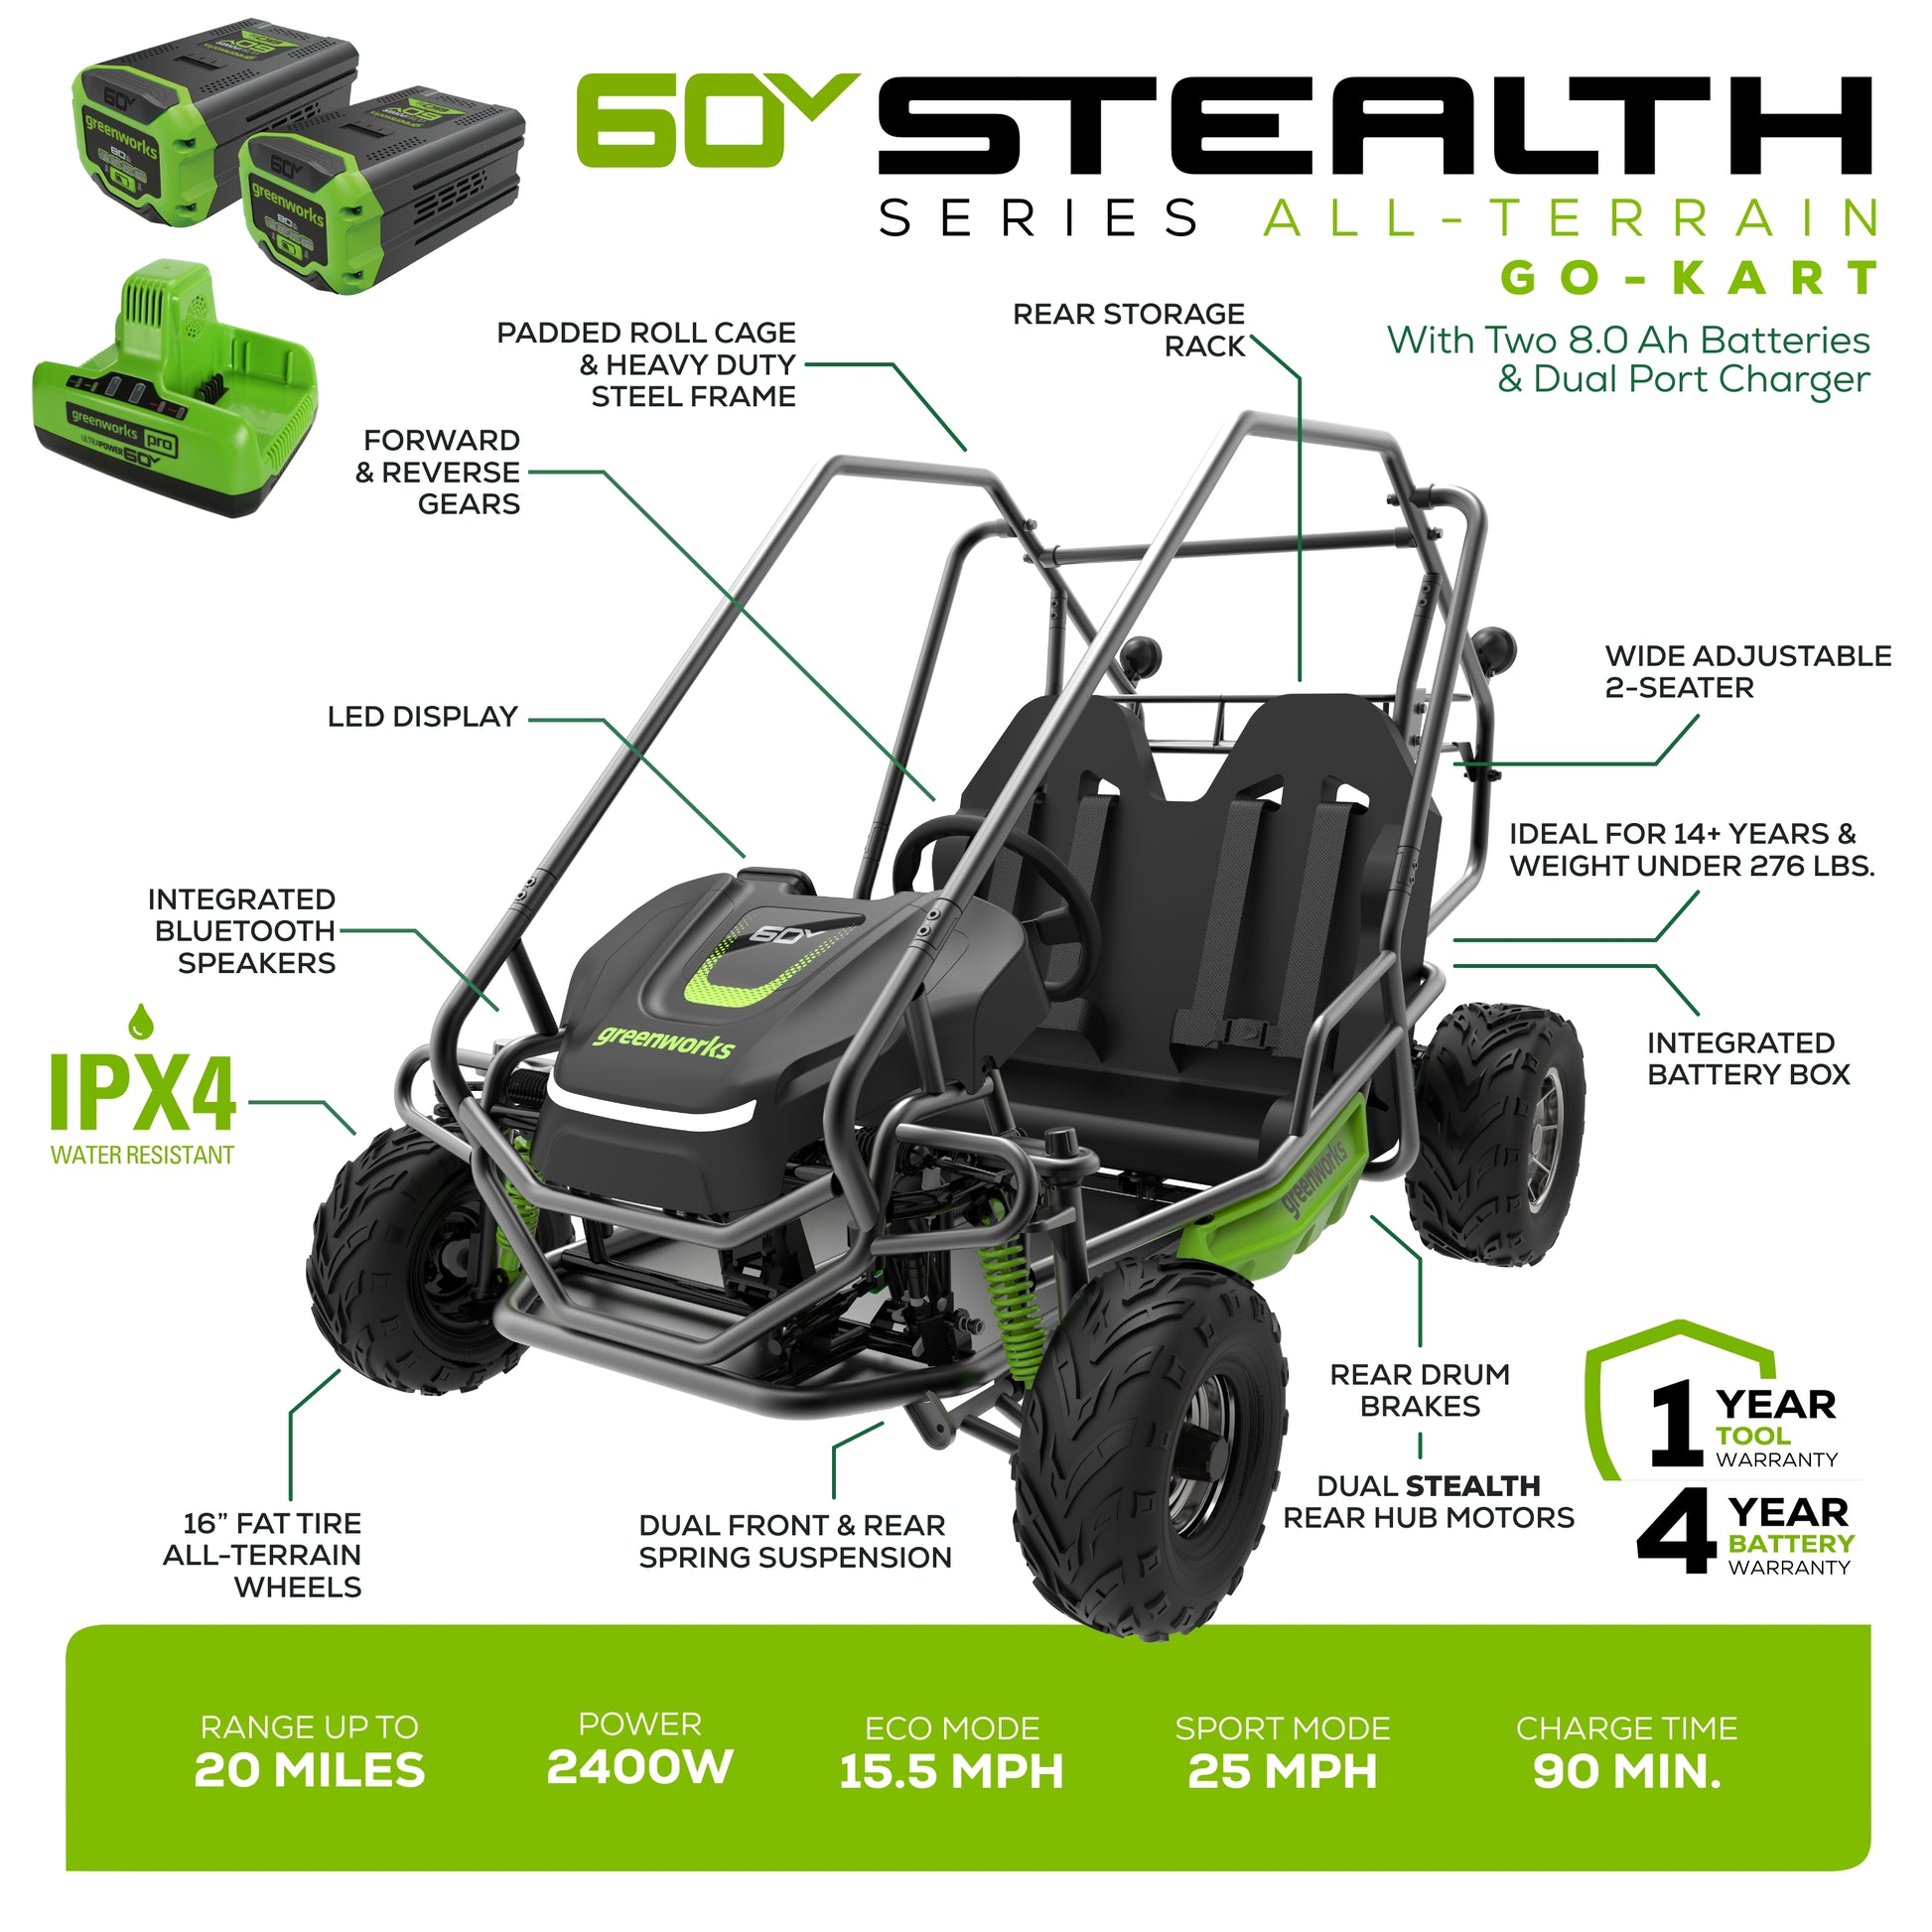 60V STEALTH Series All-Terrain 2-Seat Go-Kart